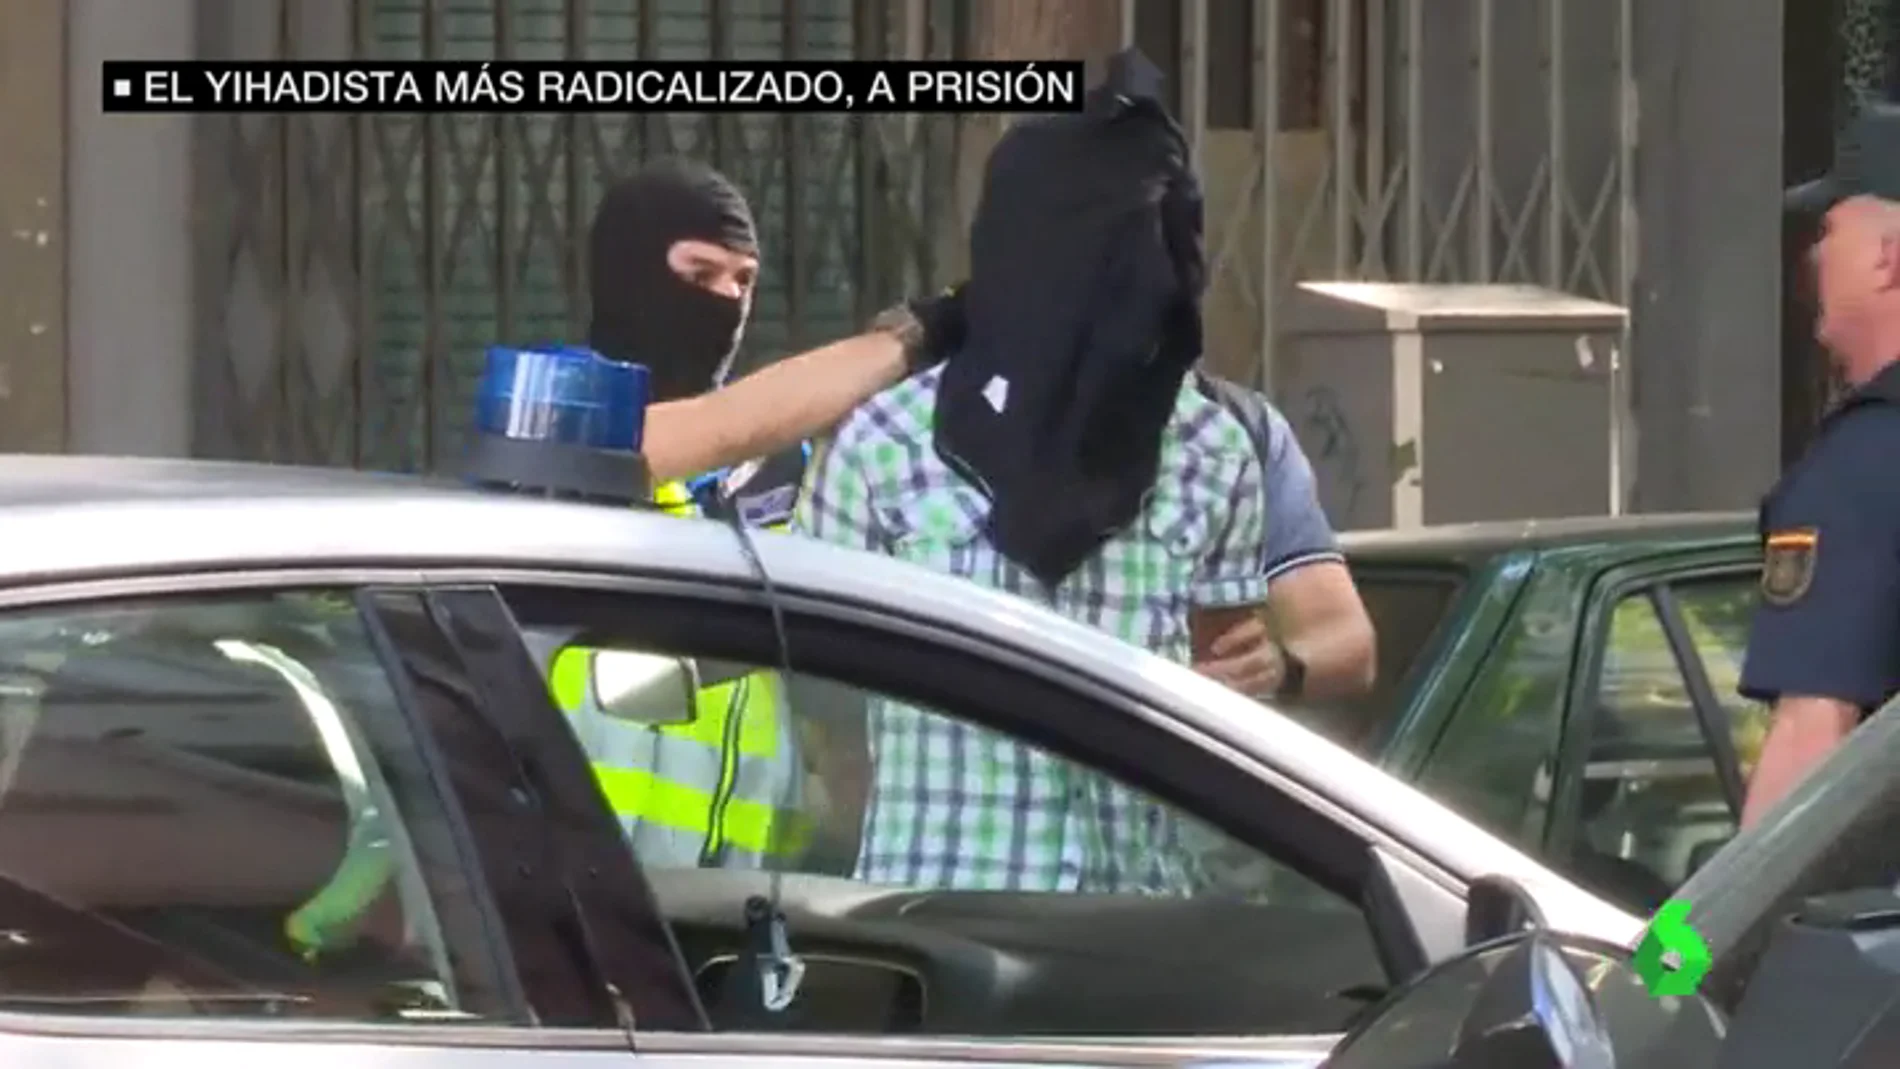 Prisión para uno de los detenidos en la operacion contra el yihadismo en Madrid